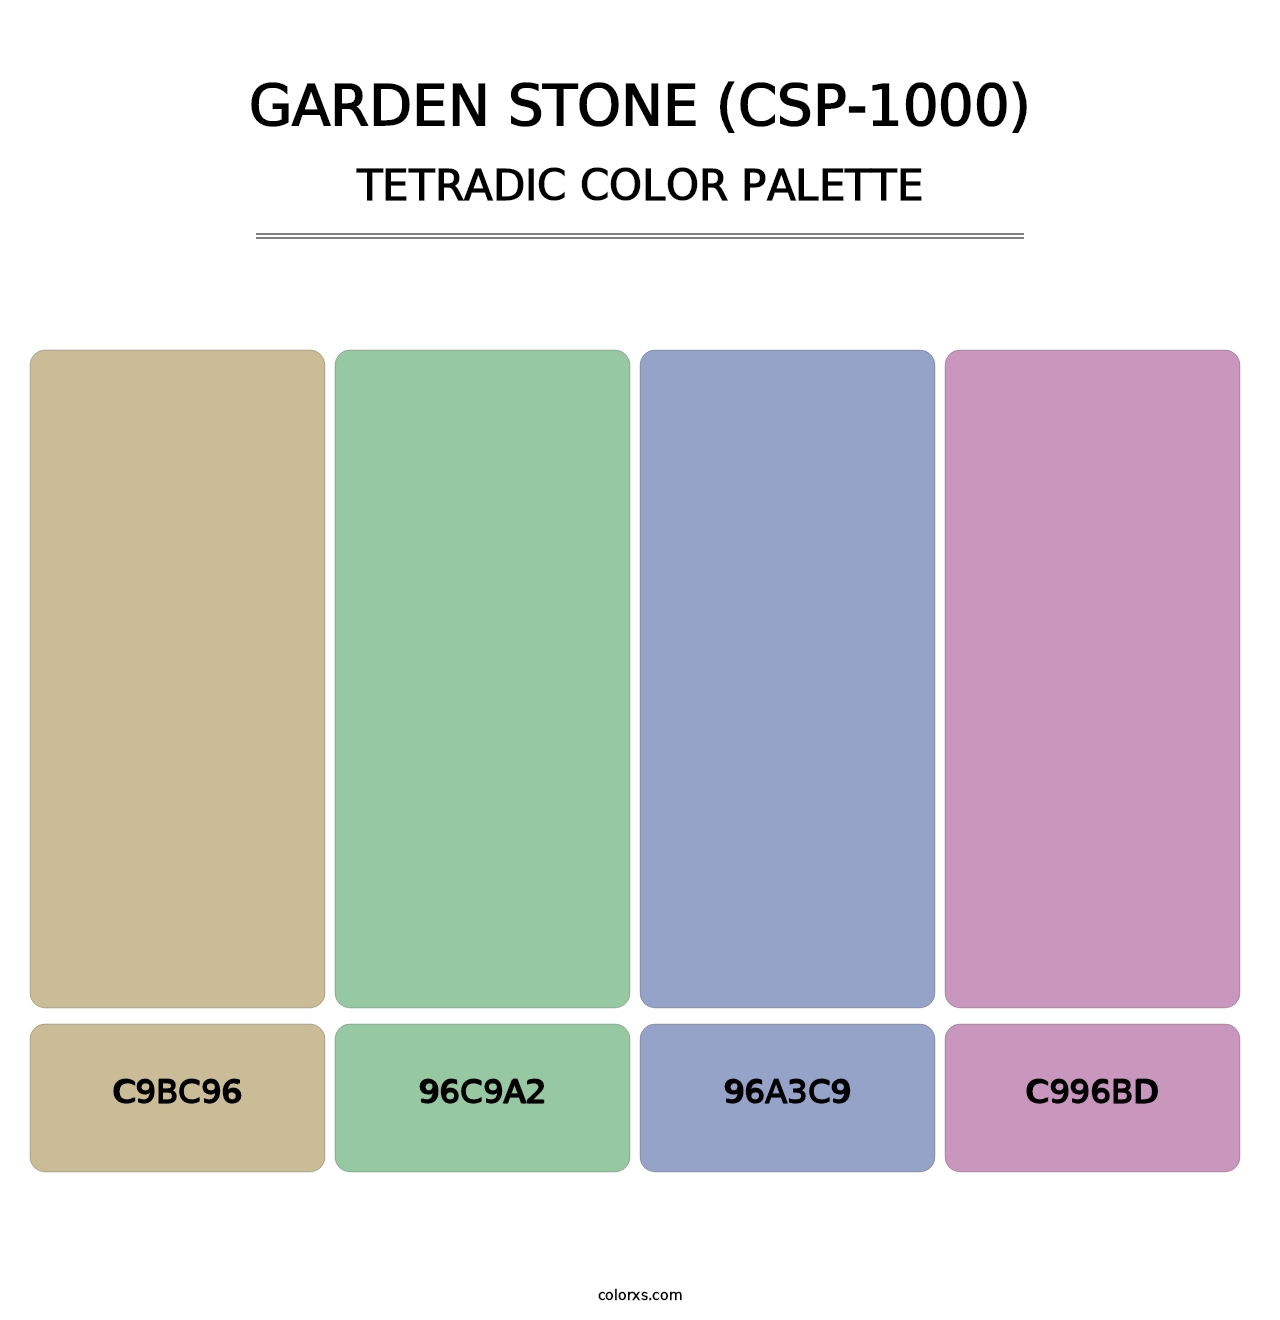 Garden Stone (CSP-1000) - Tetradic Color Palette